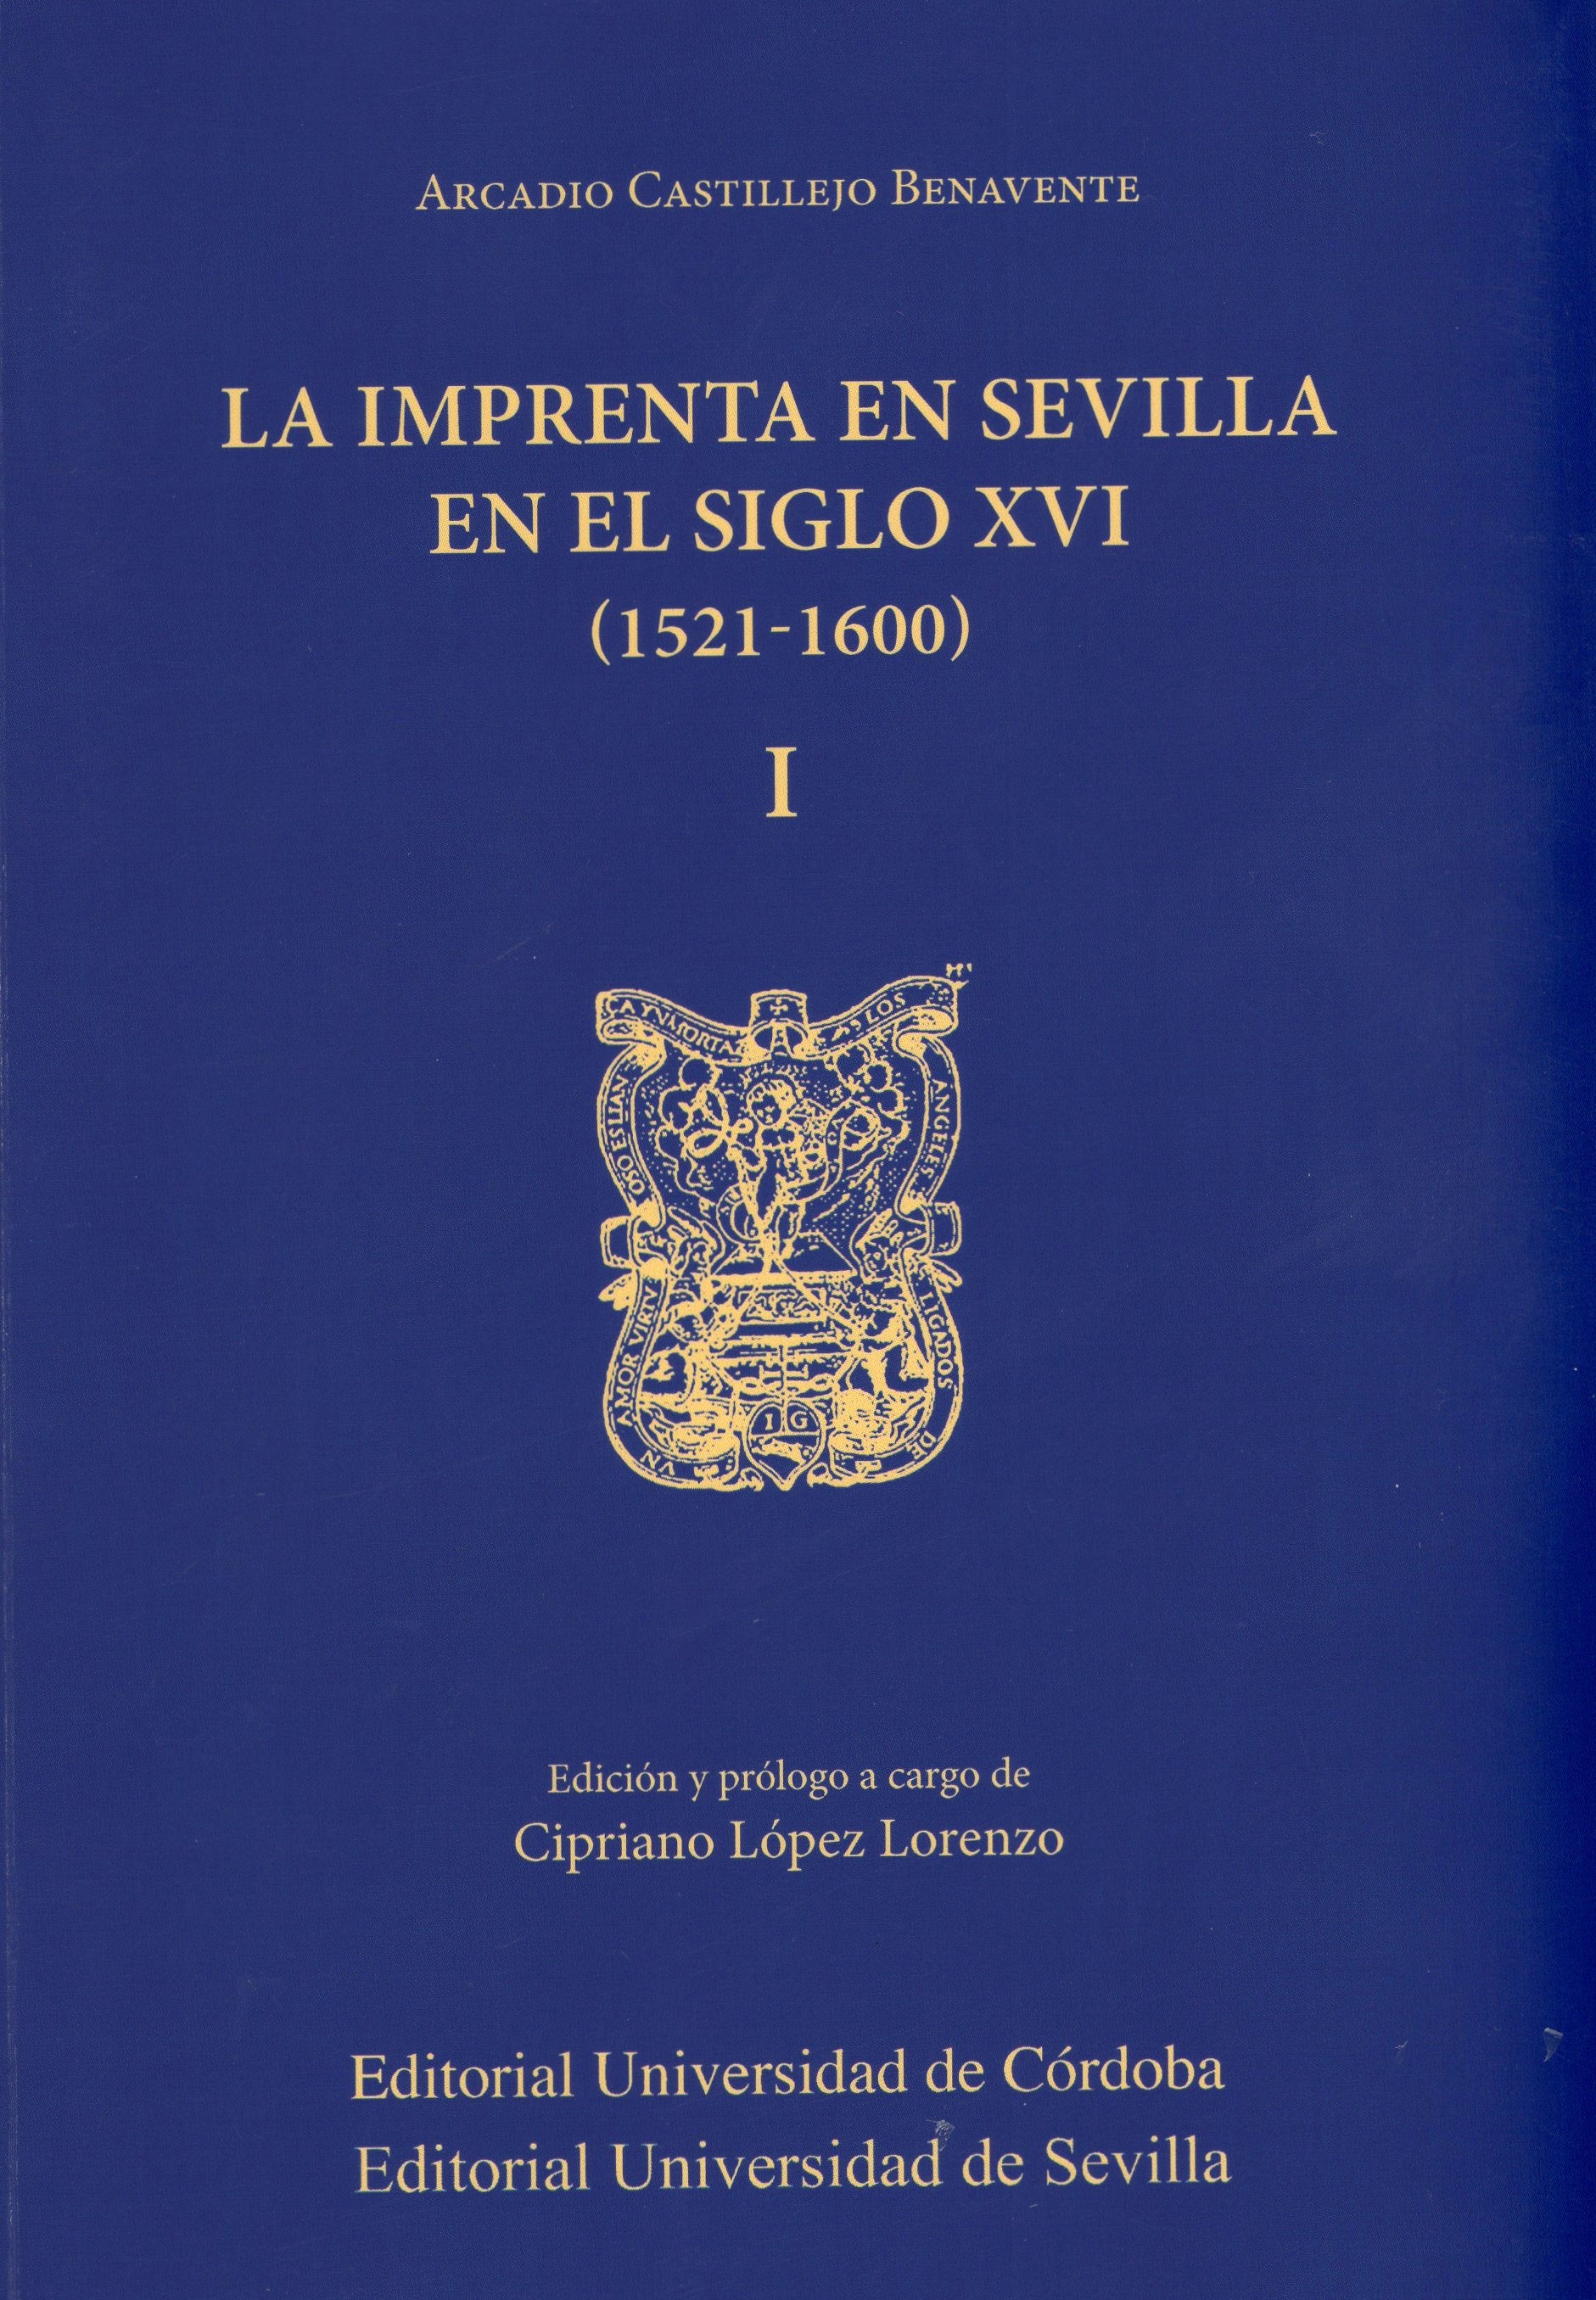 La Imprenta en Sevilla en el siglo XVI